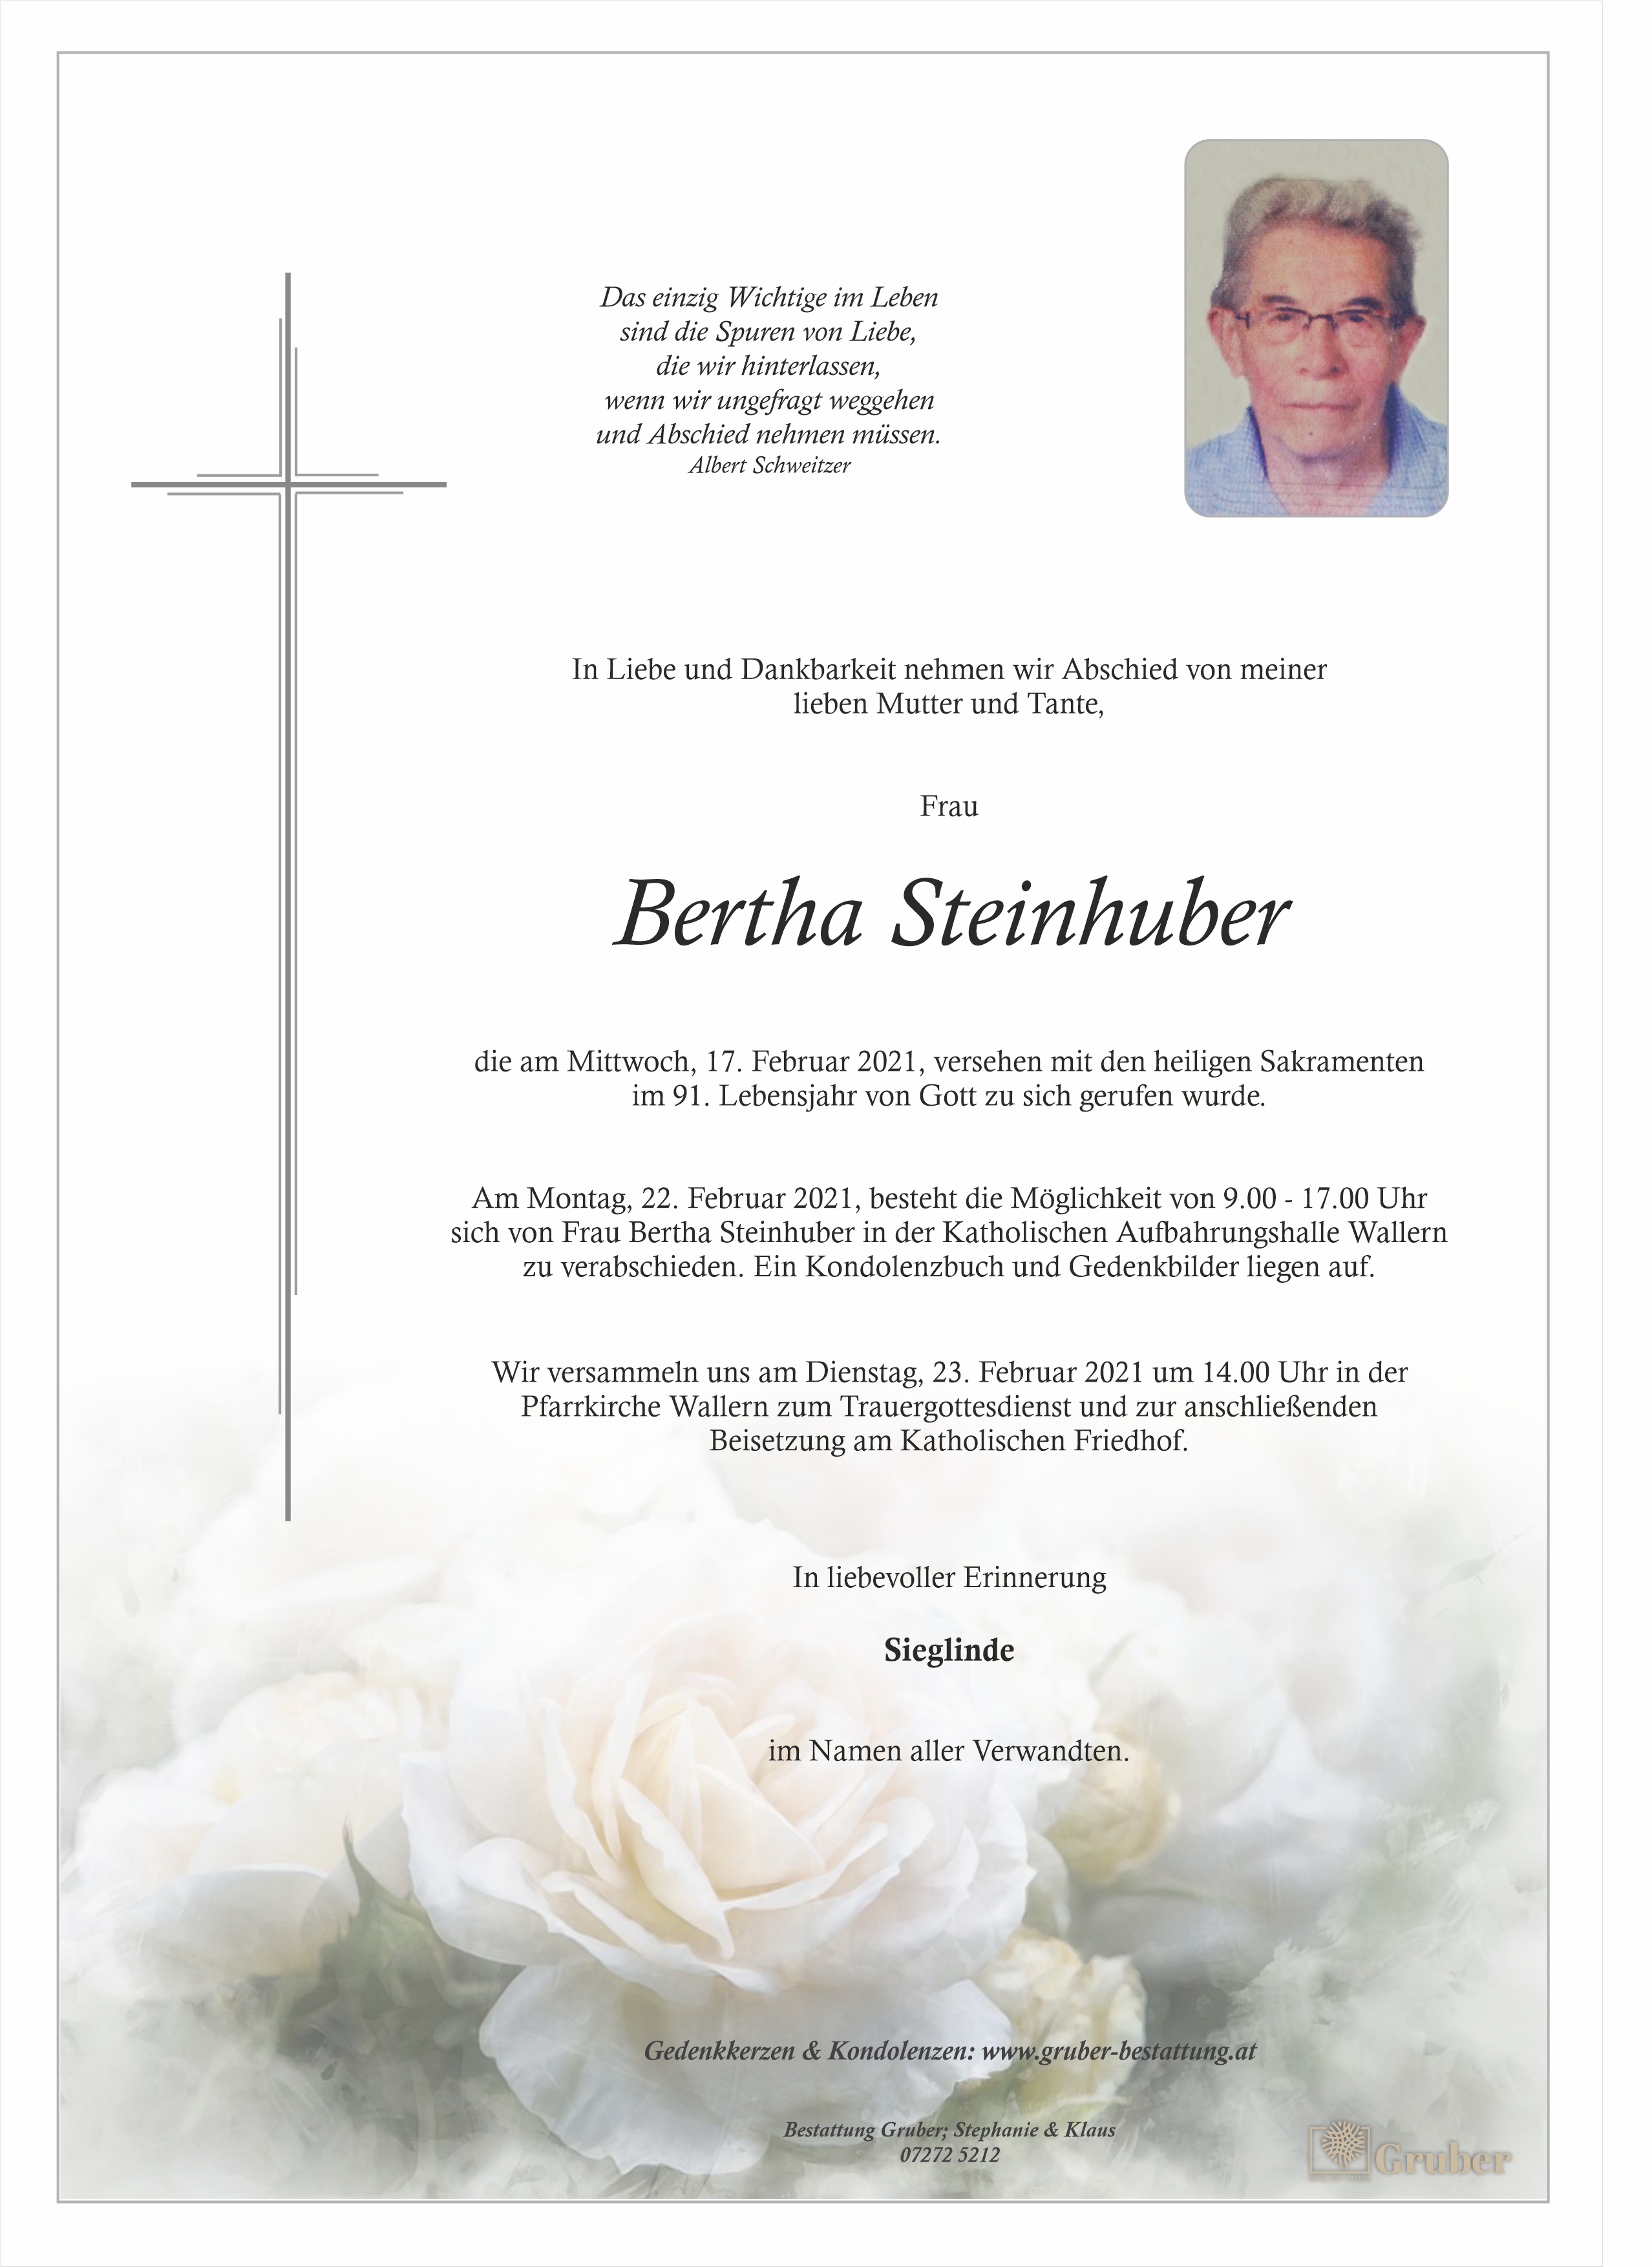 Bertha Steinhuber (Wallern)